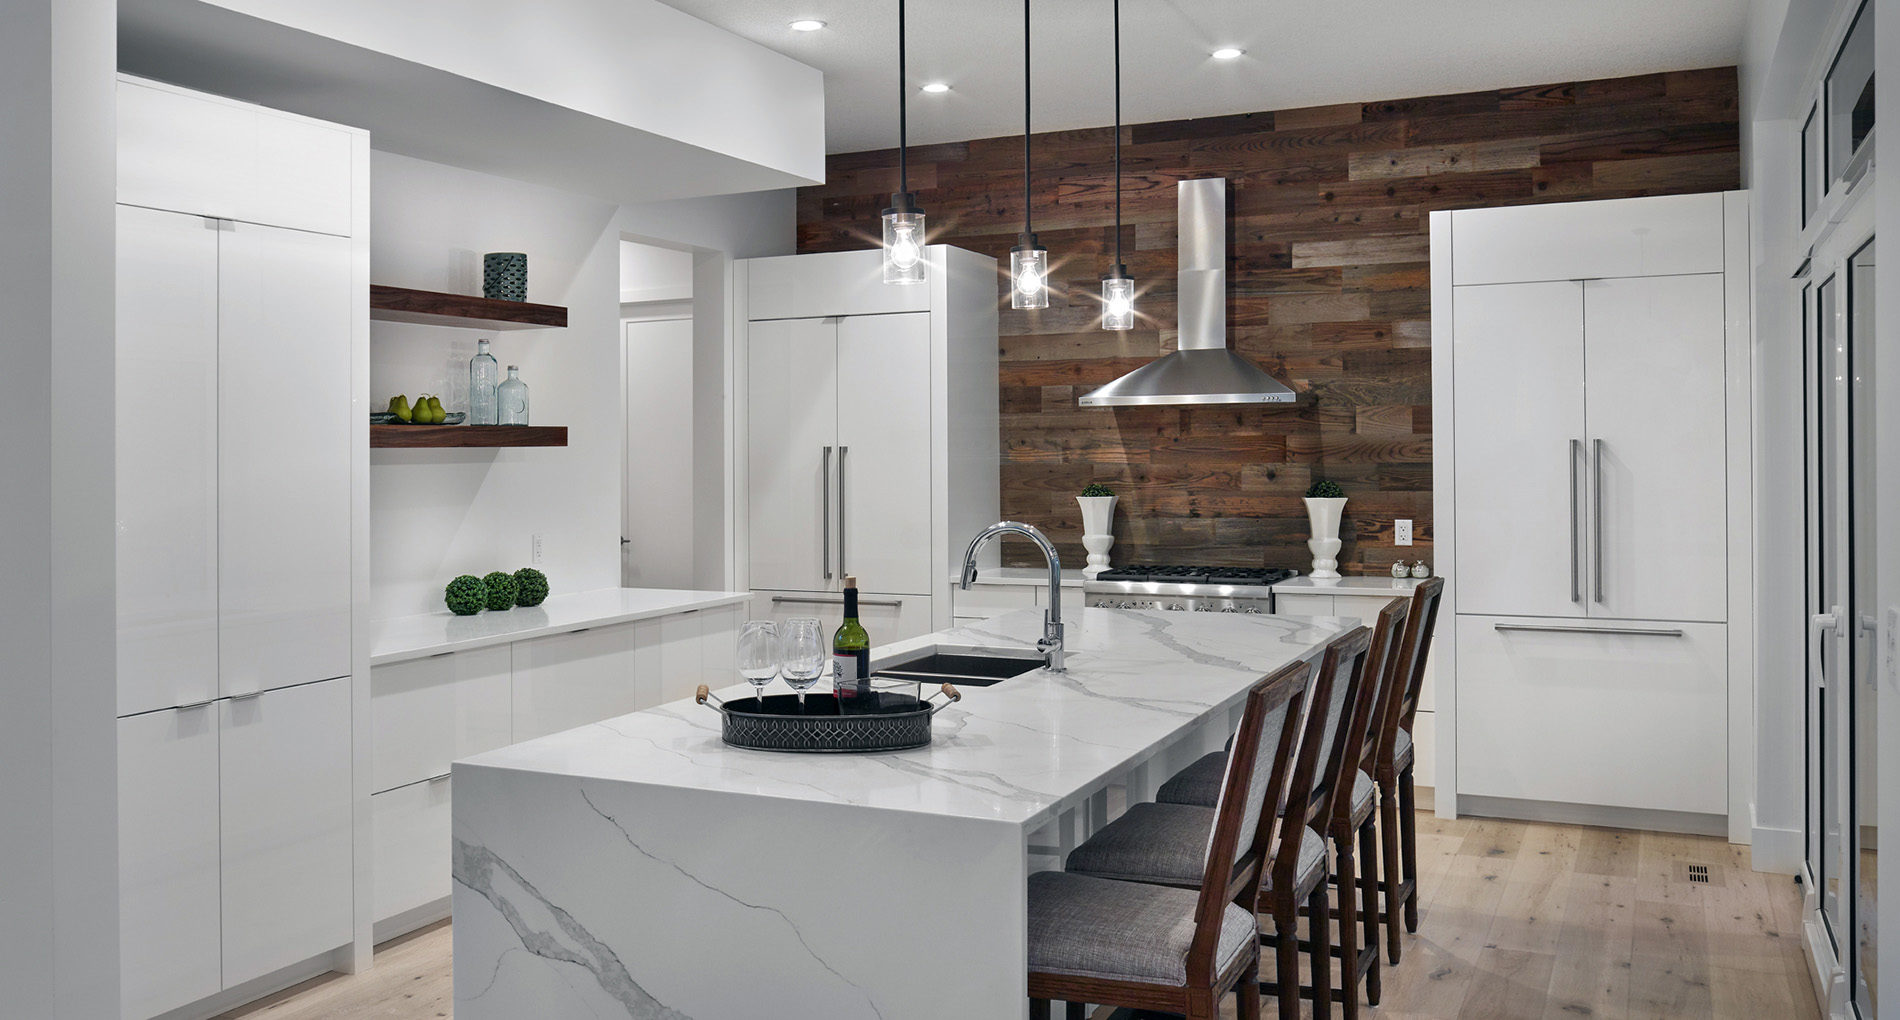 new design kitchens edmonton | Free Resume